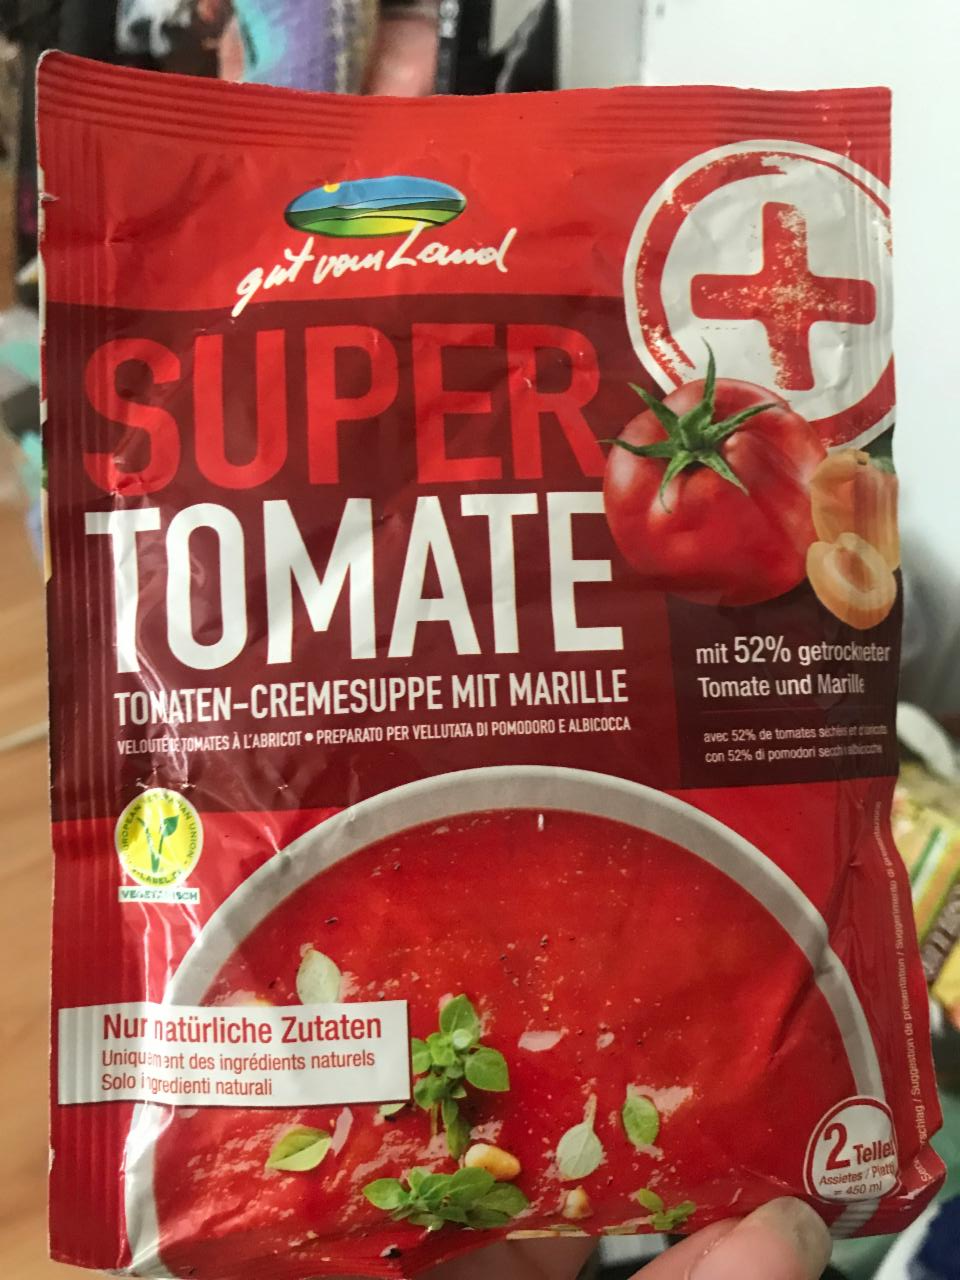 Fotografie - Super tomate Gut vom Land